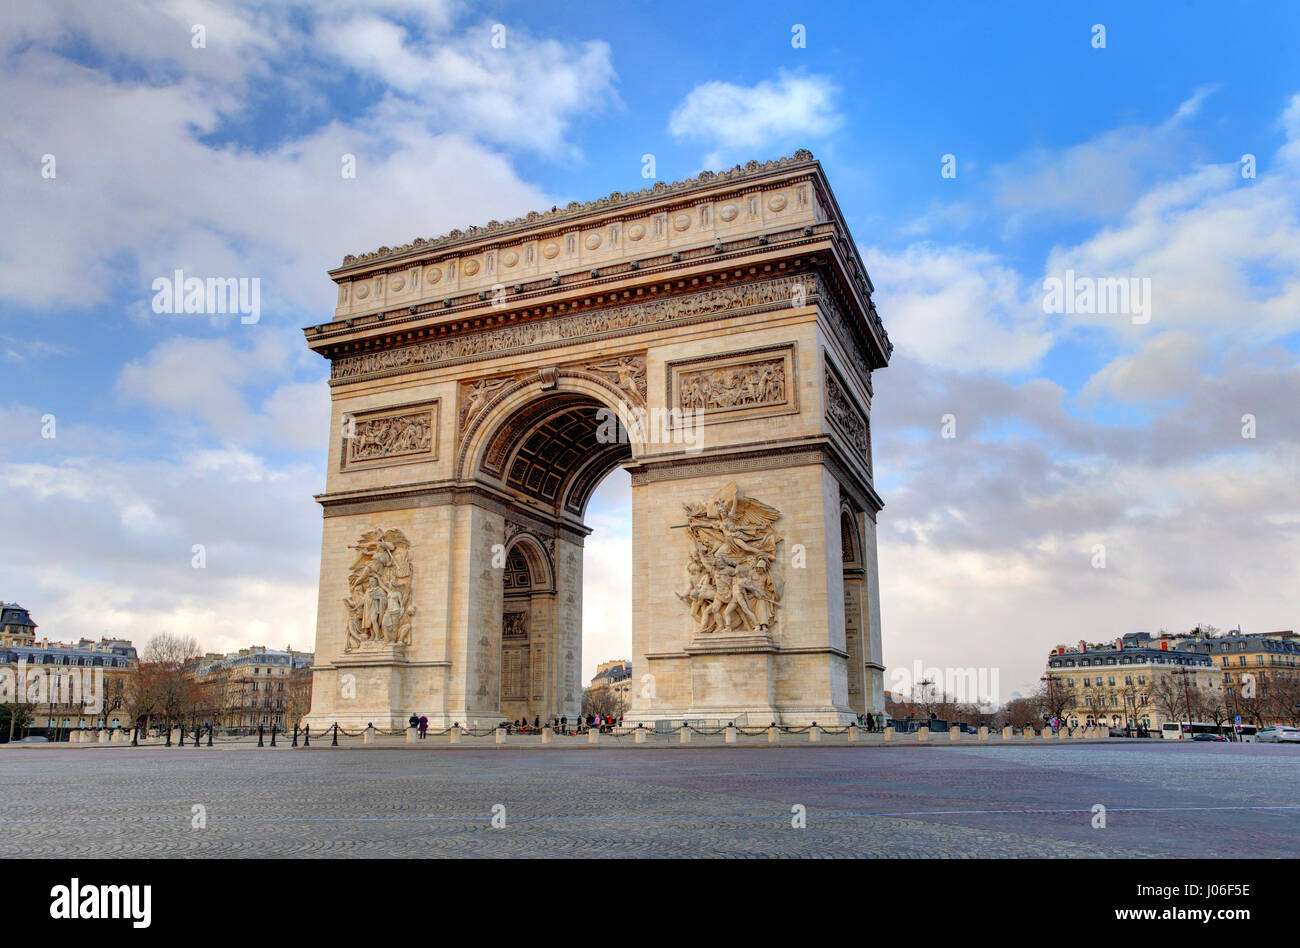 Arc de triomphe Paris city at day Stock Photo